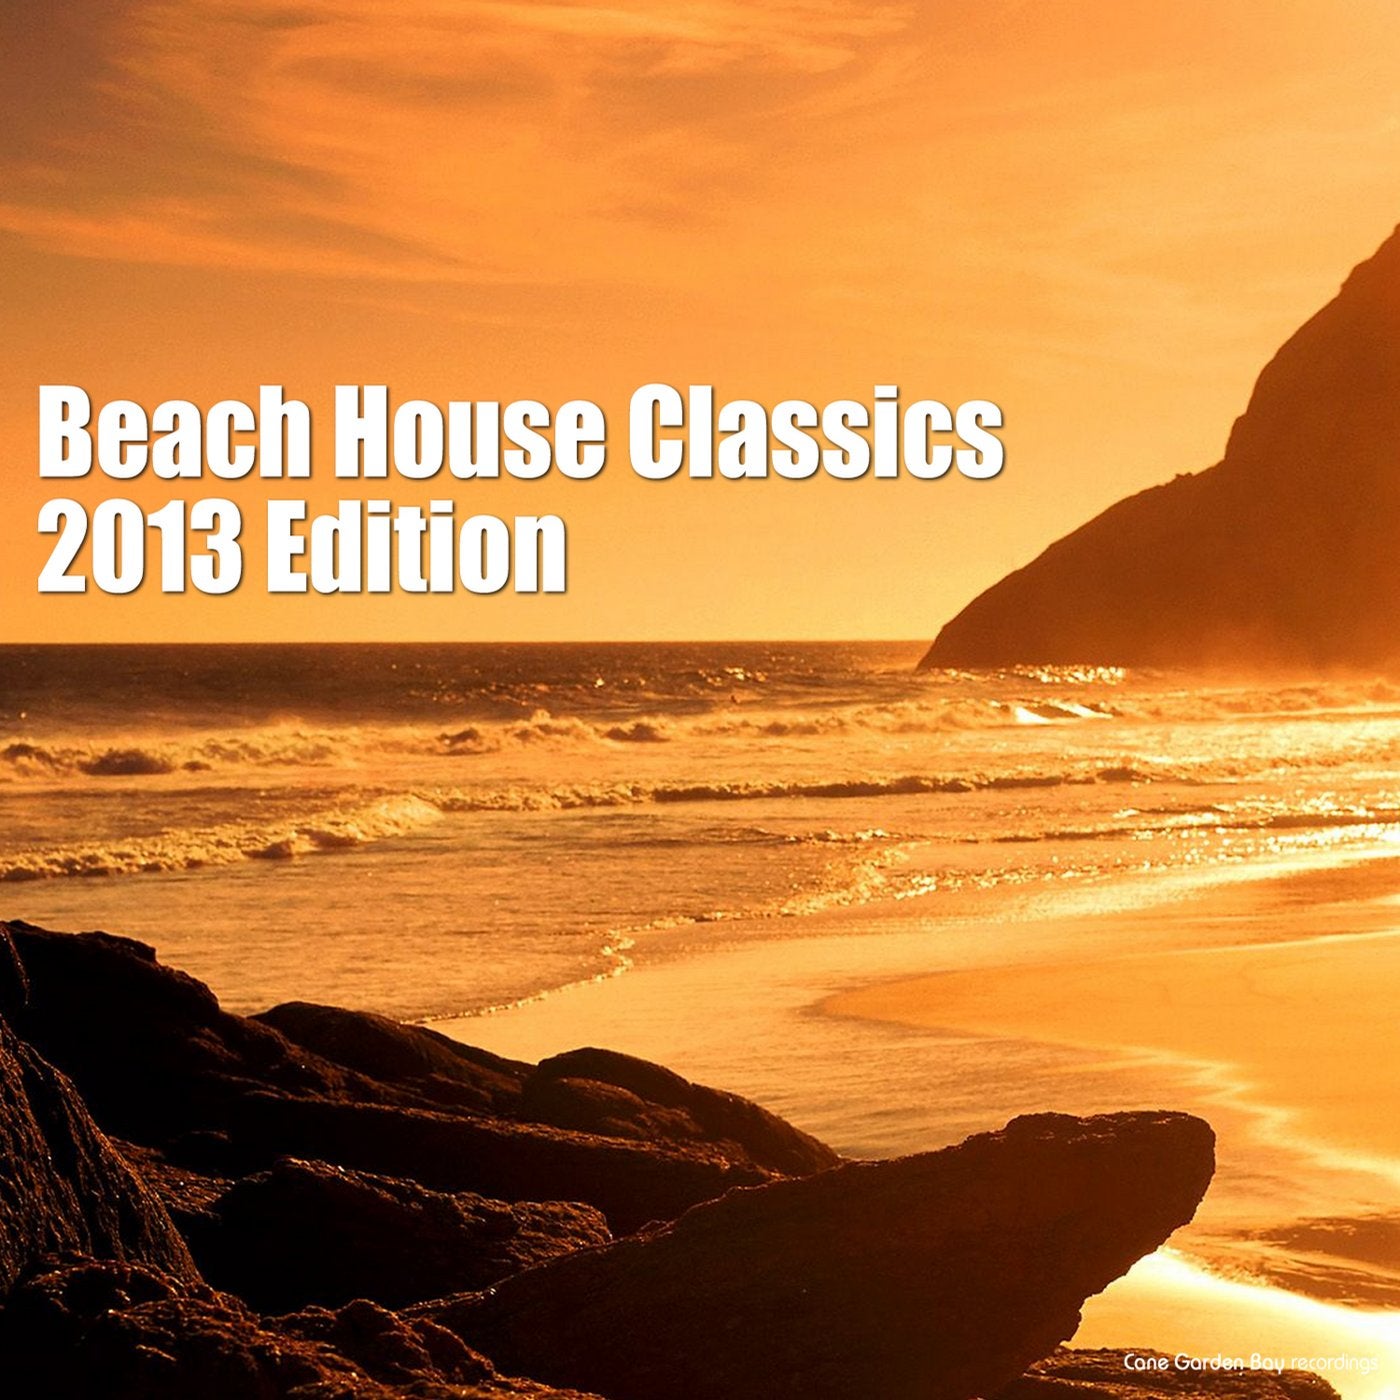 Beach House Classics - 2013 Edition